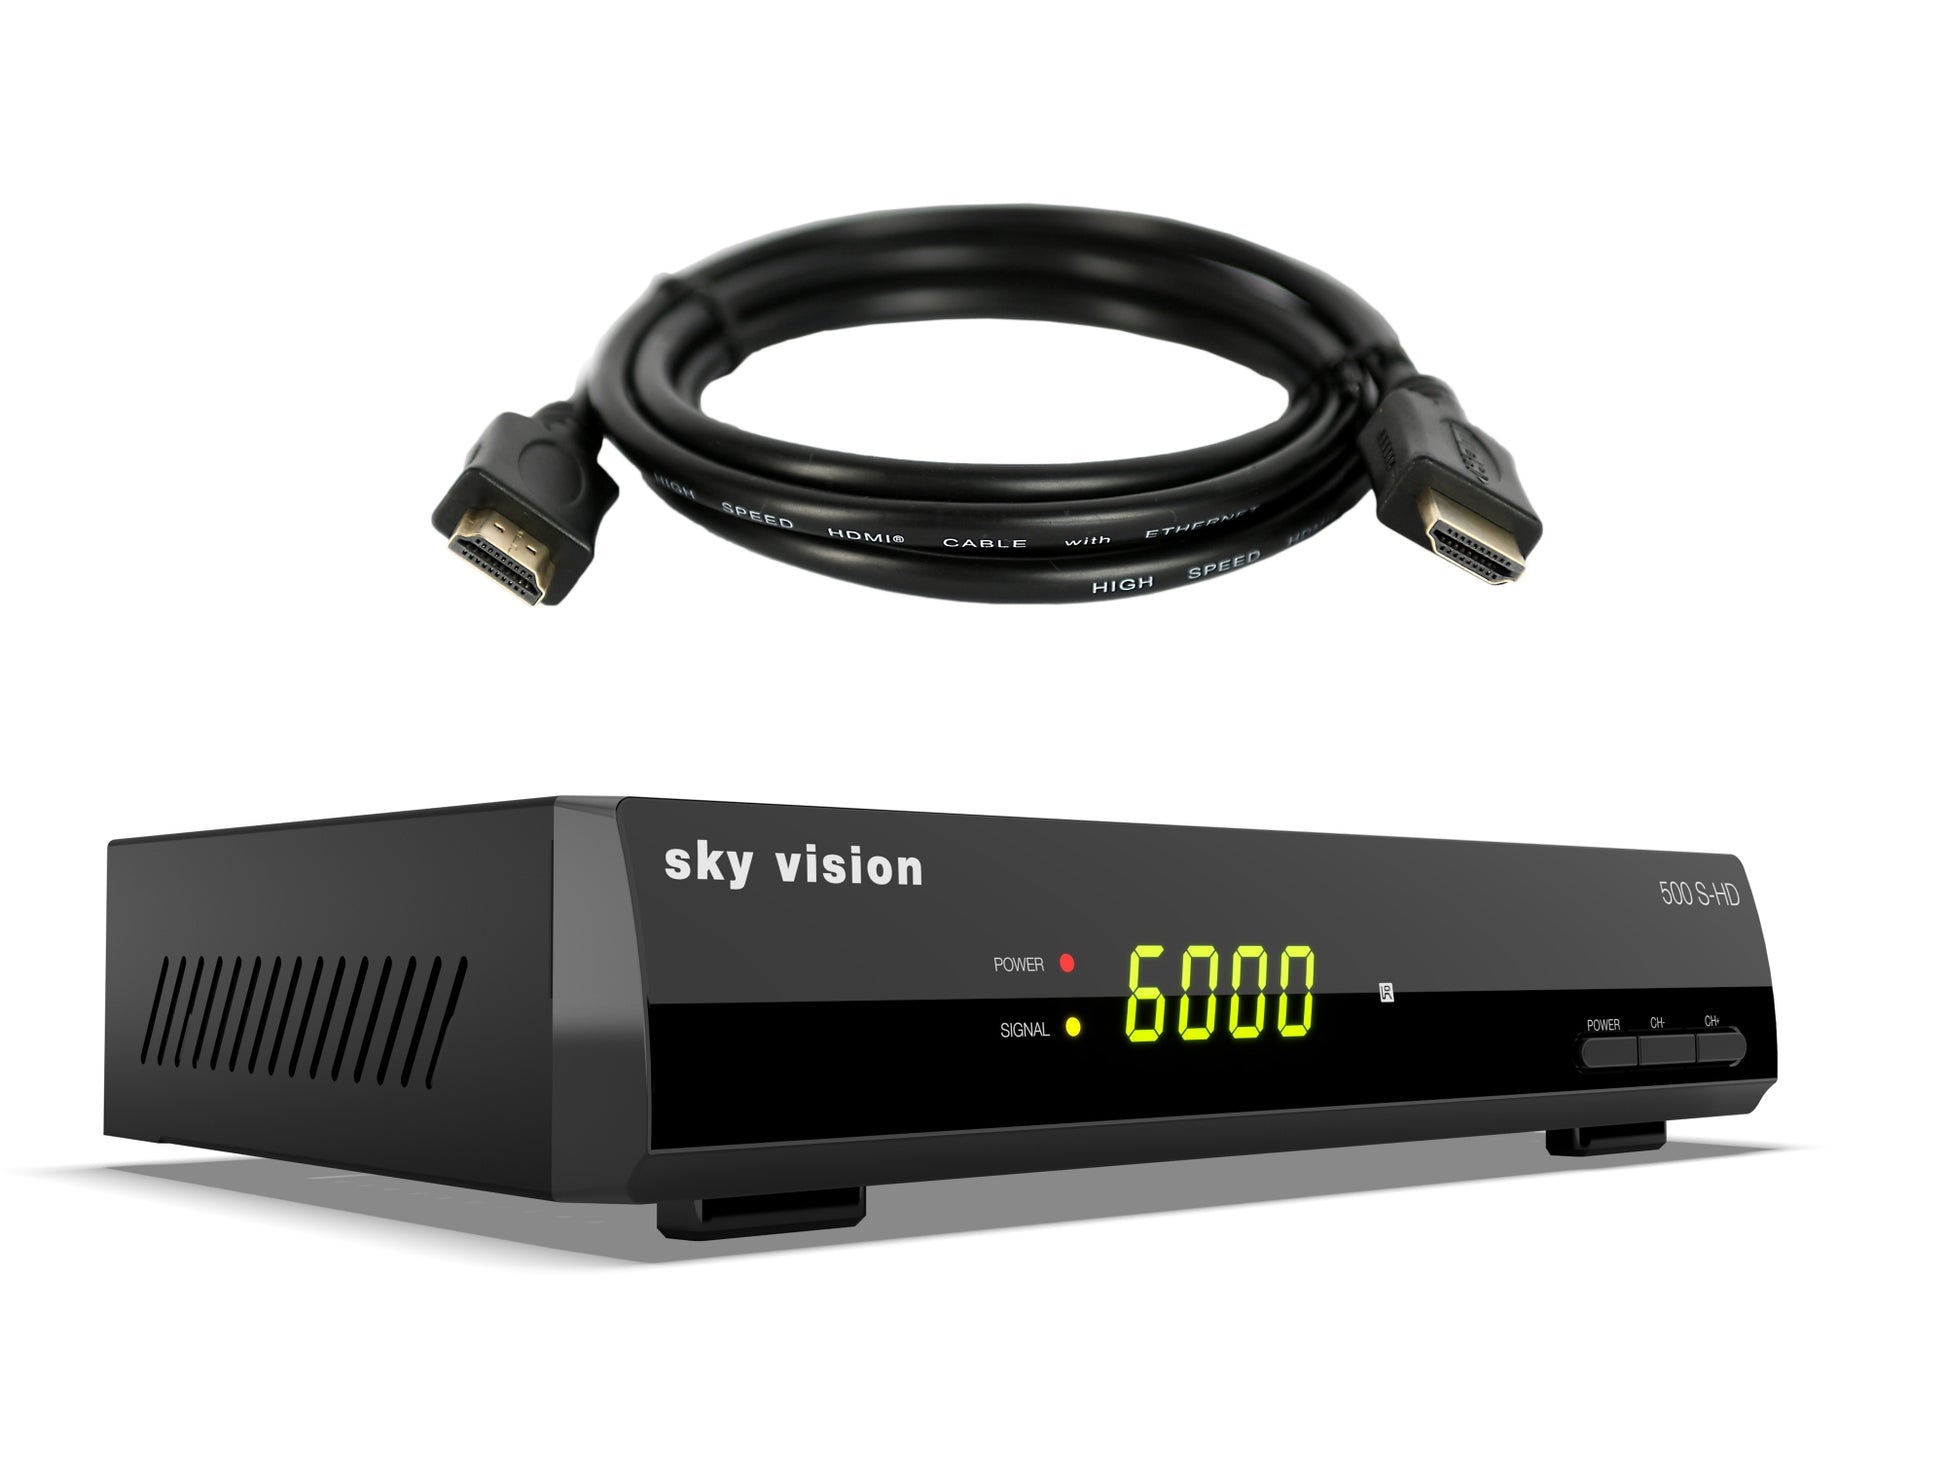 500 S-HD mit HDMI Kabel